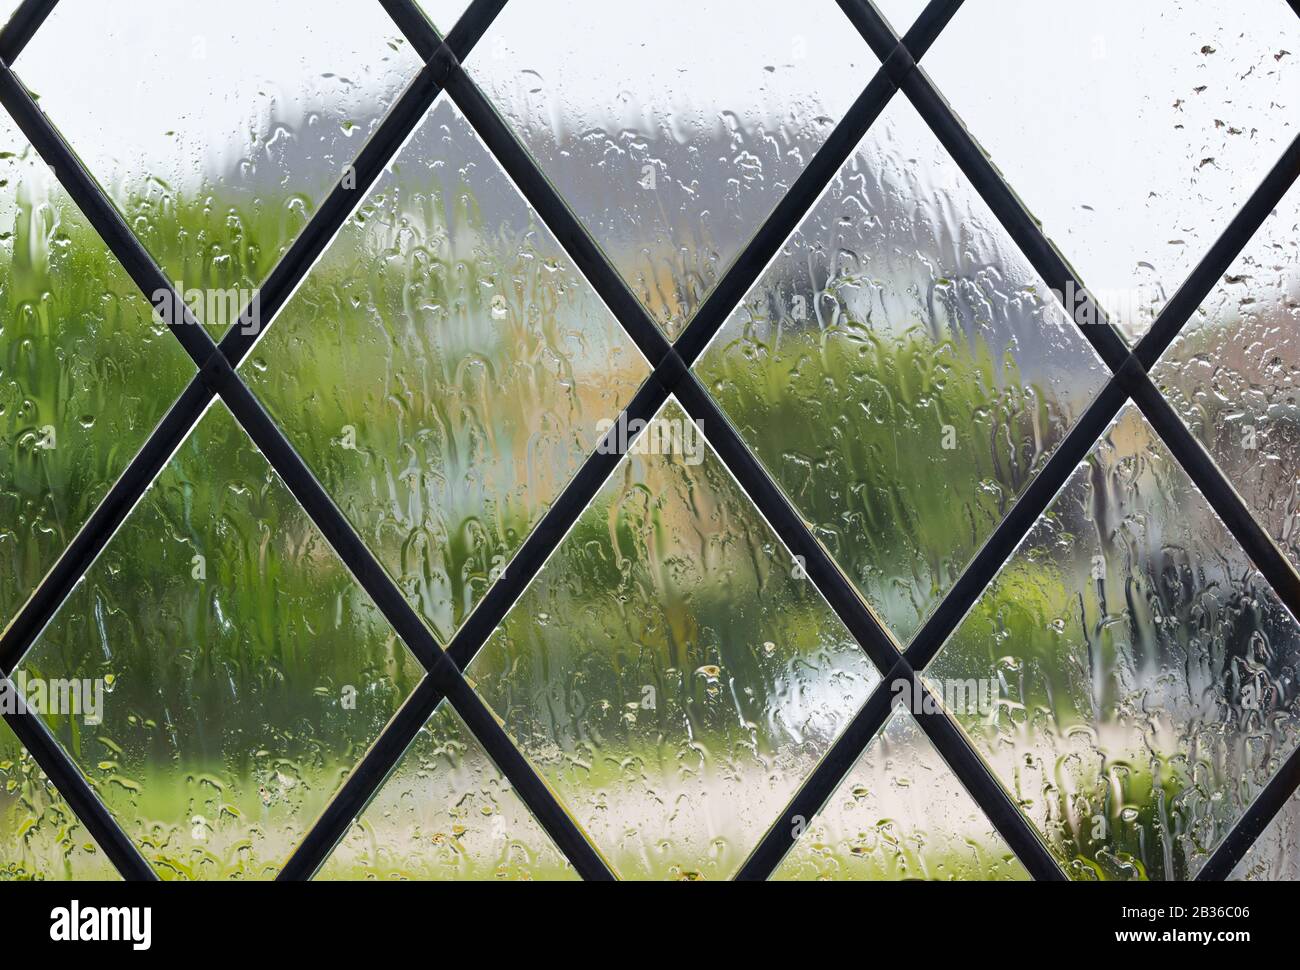 Lluvia en la ventana al mirar afuera mientras llueve en un día húmedo de clima típico británico, para ilustrar quedarse en casa debido a COVID19. Foto de stock